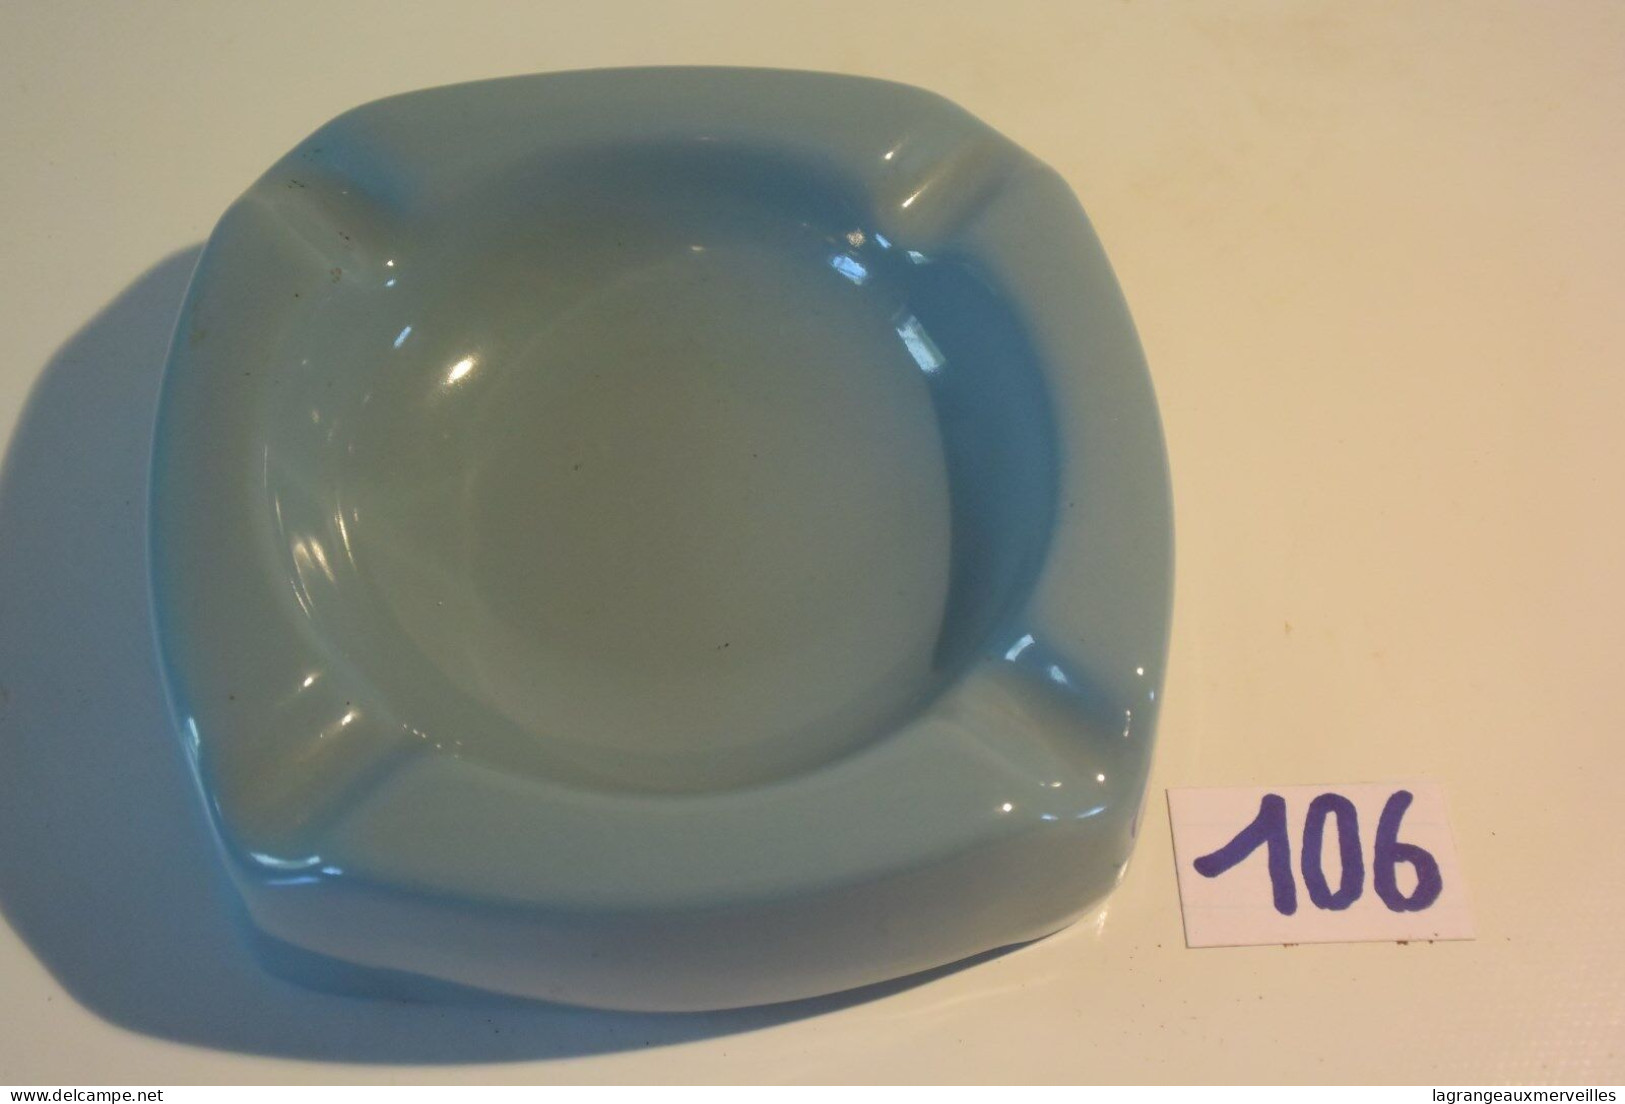 C106 Ancien Cendrier Bleu SANIBEL - Porcelaine